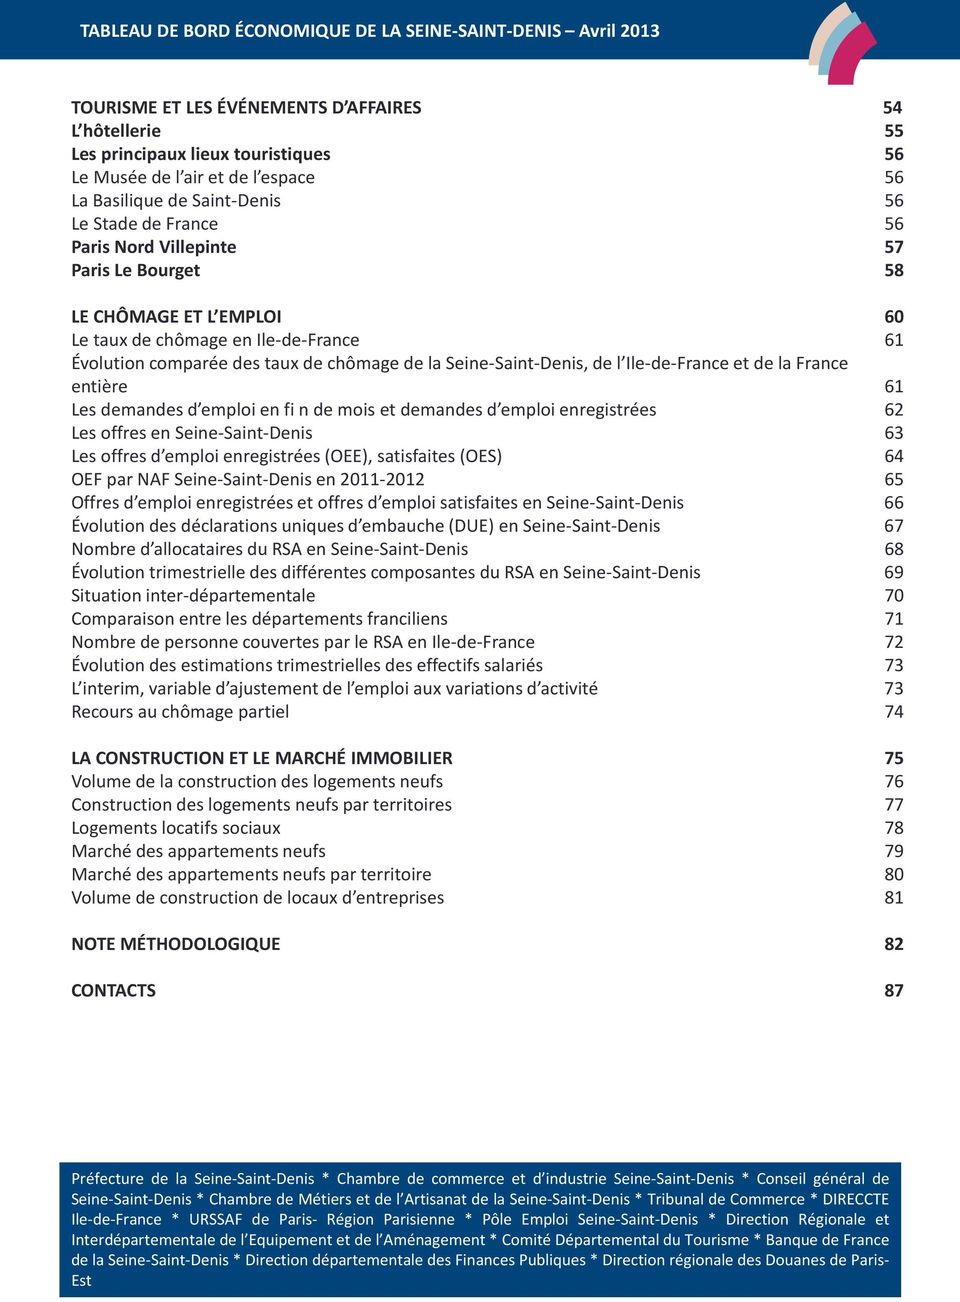 entière 61 Les demandes d emploi en fi n de mois et demandes d emploi enregistrées 62 Les offres en Seine-Saint-Denis 63 Les offres d emploi enregistrées (OEE), satisfaites (OES) 64 OEF par NAF